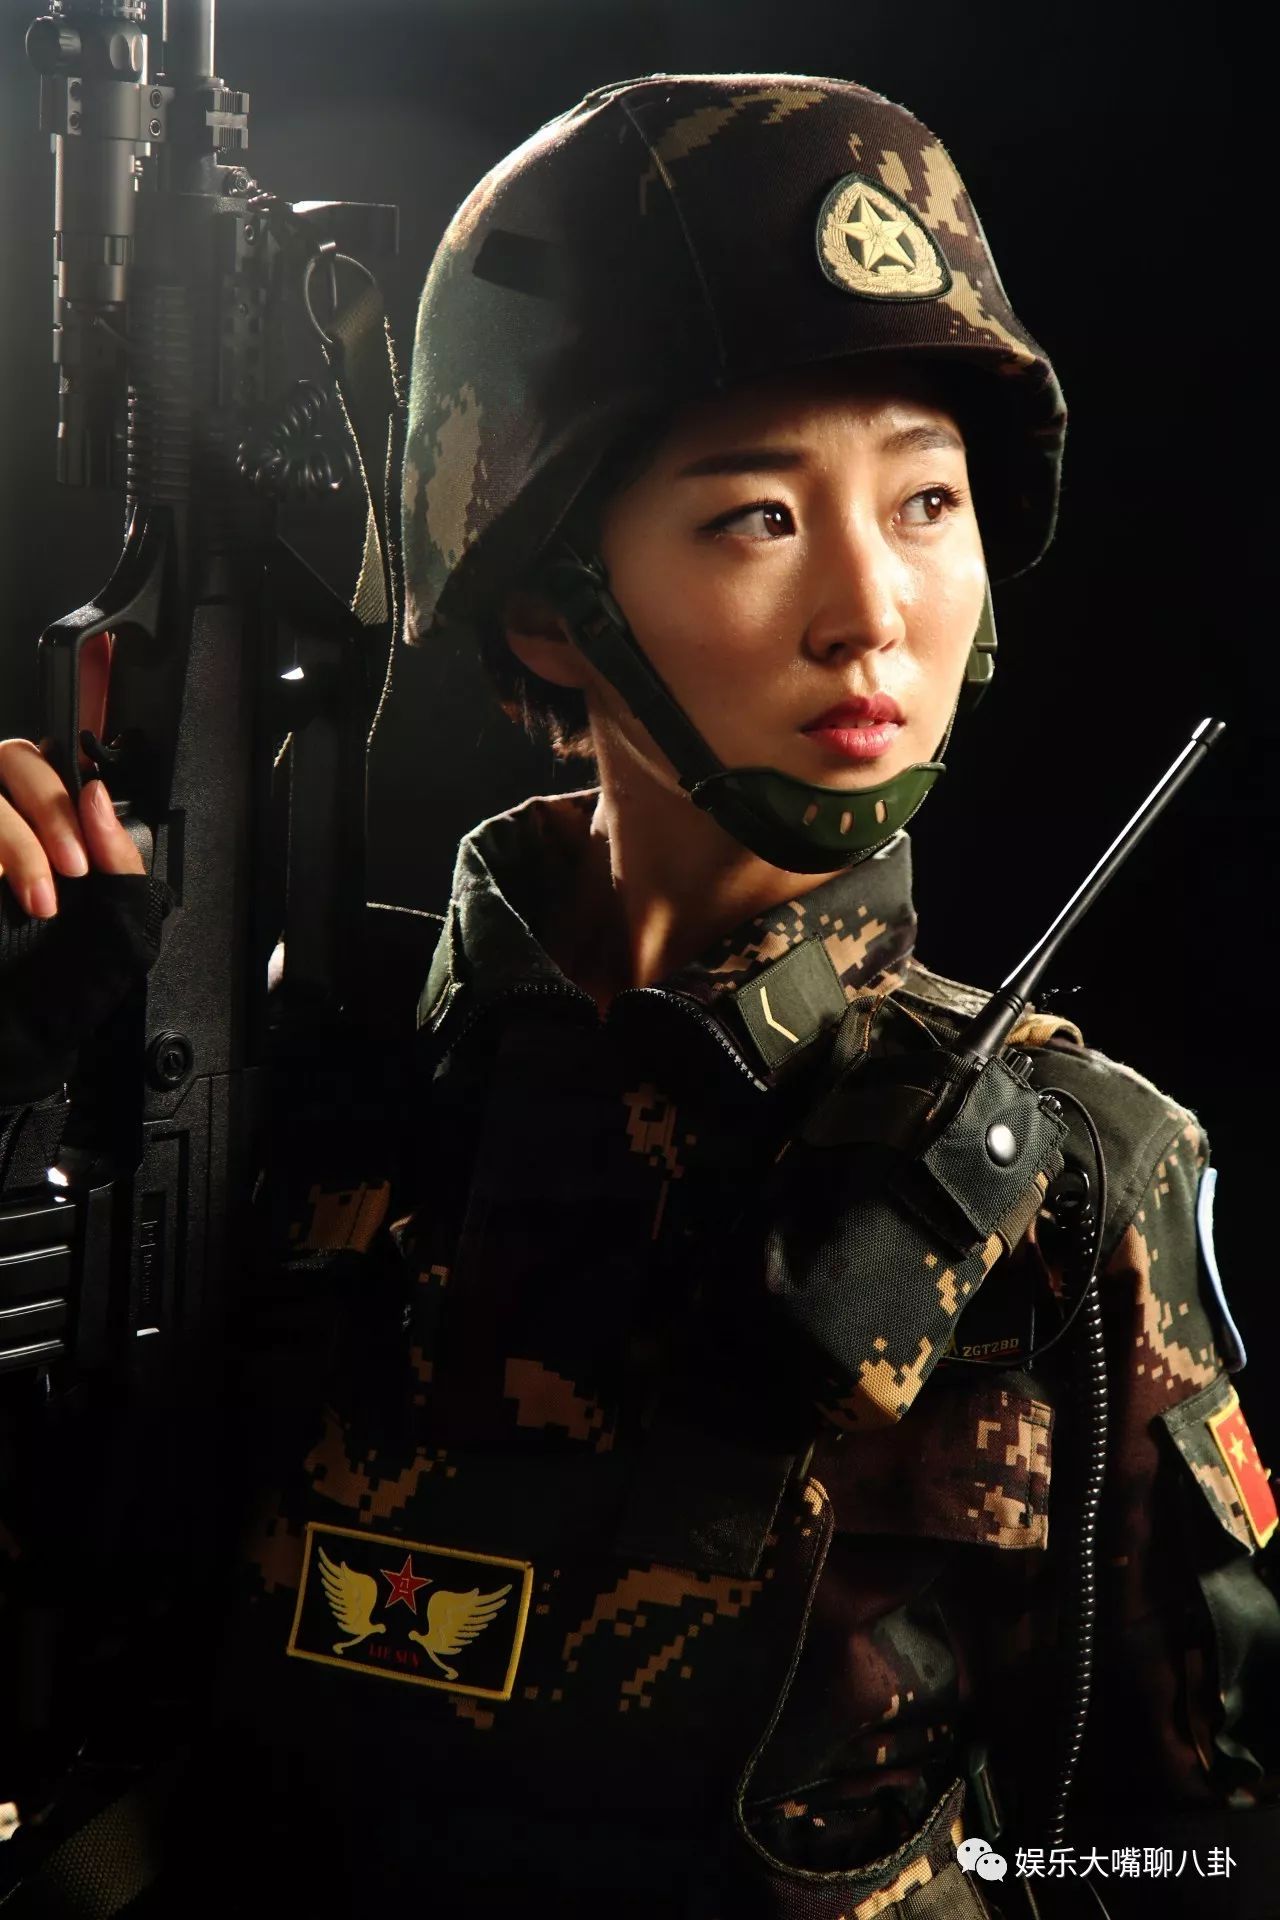 快乐女兵--尽以此片献给正在服役的军人们 - 尼康 D300 样张 - PConline数码相机样张库